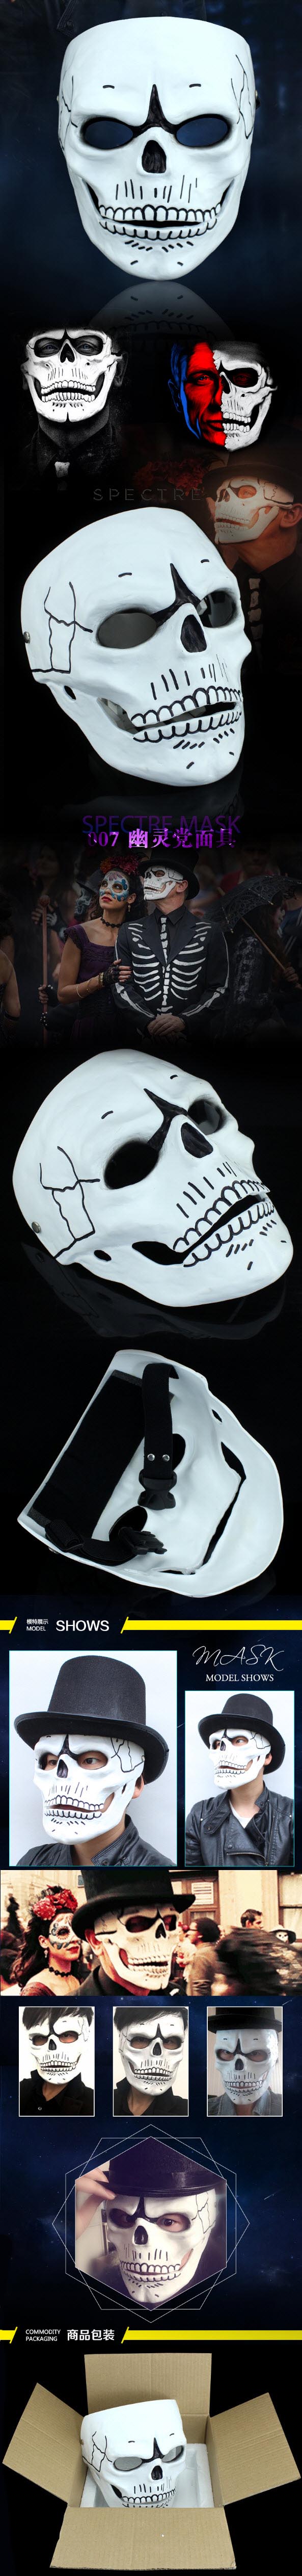 Movie 007 Spectre Skull Horror Mask Halloween Mask